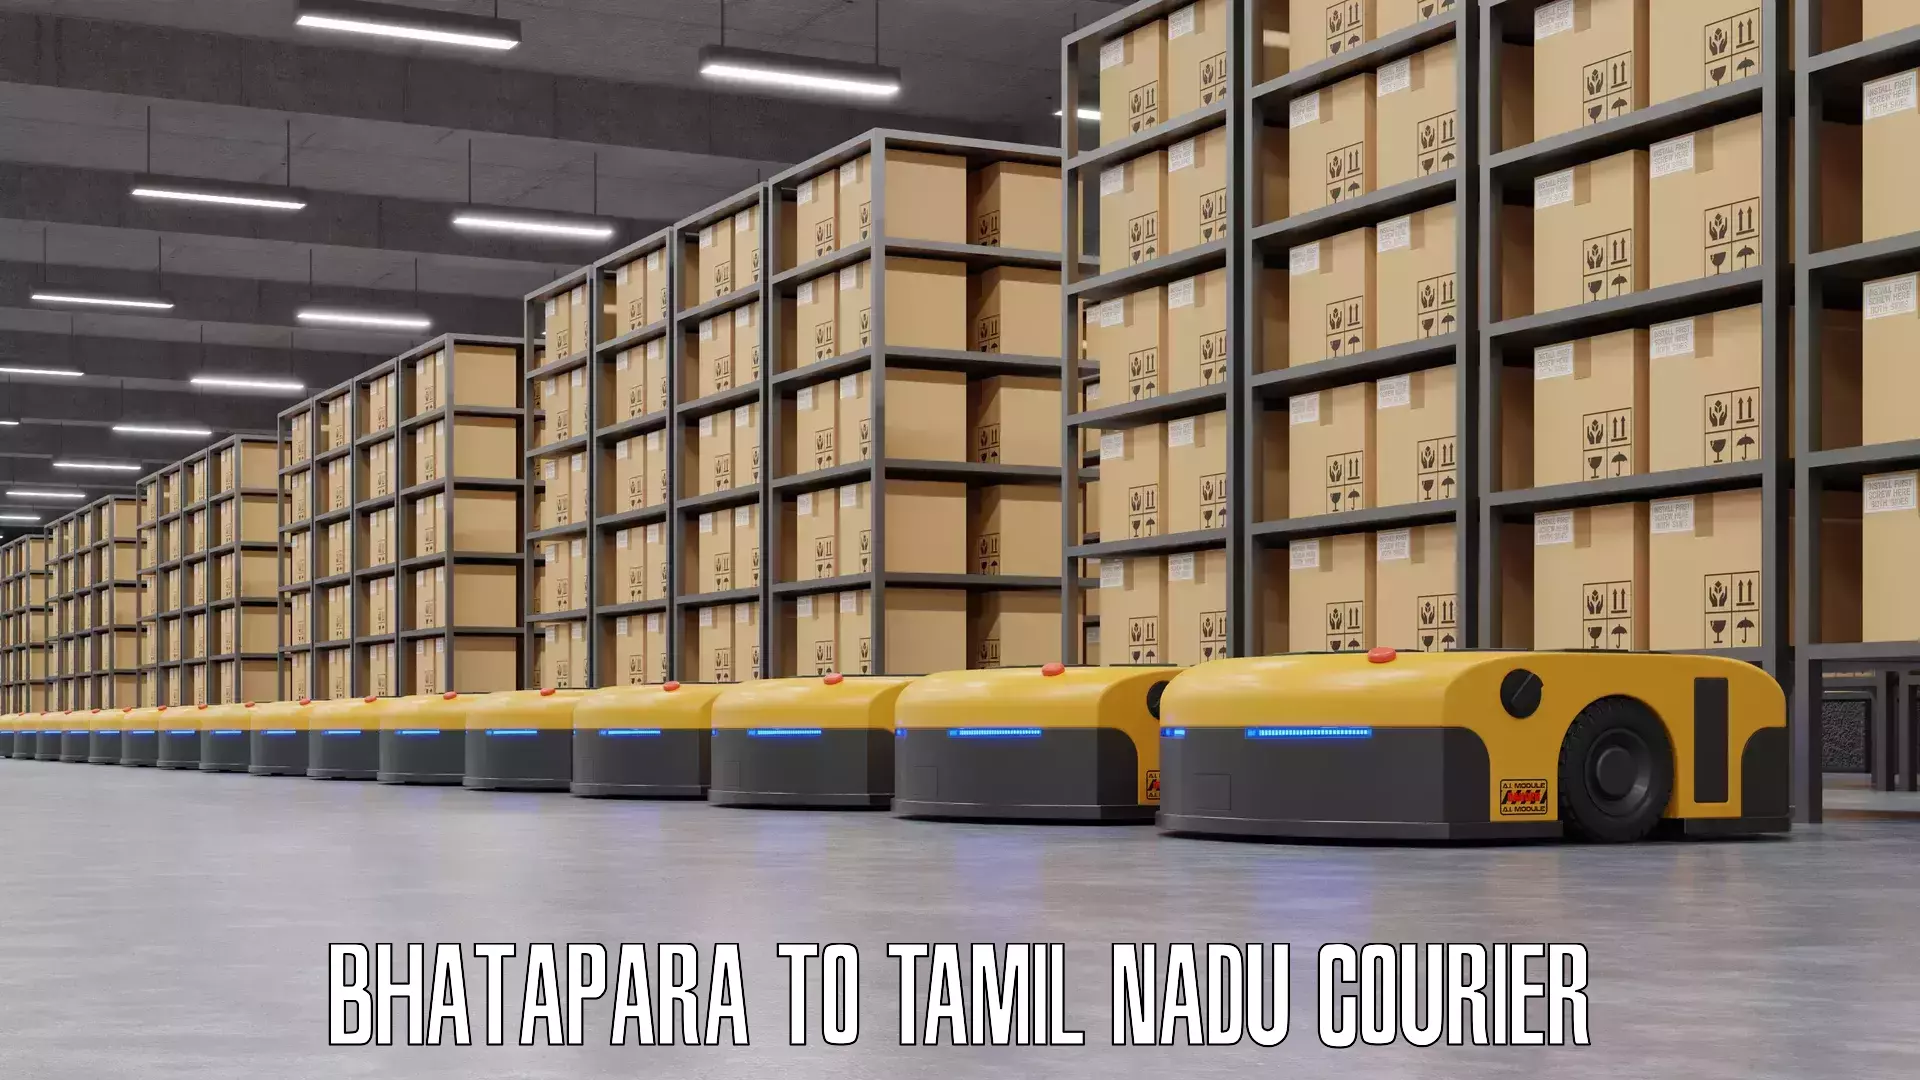 Luggage shipment specialists Bhatapara to Tamil Nadu